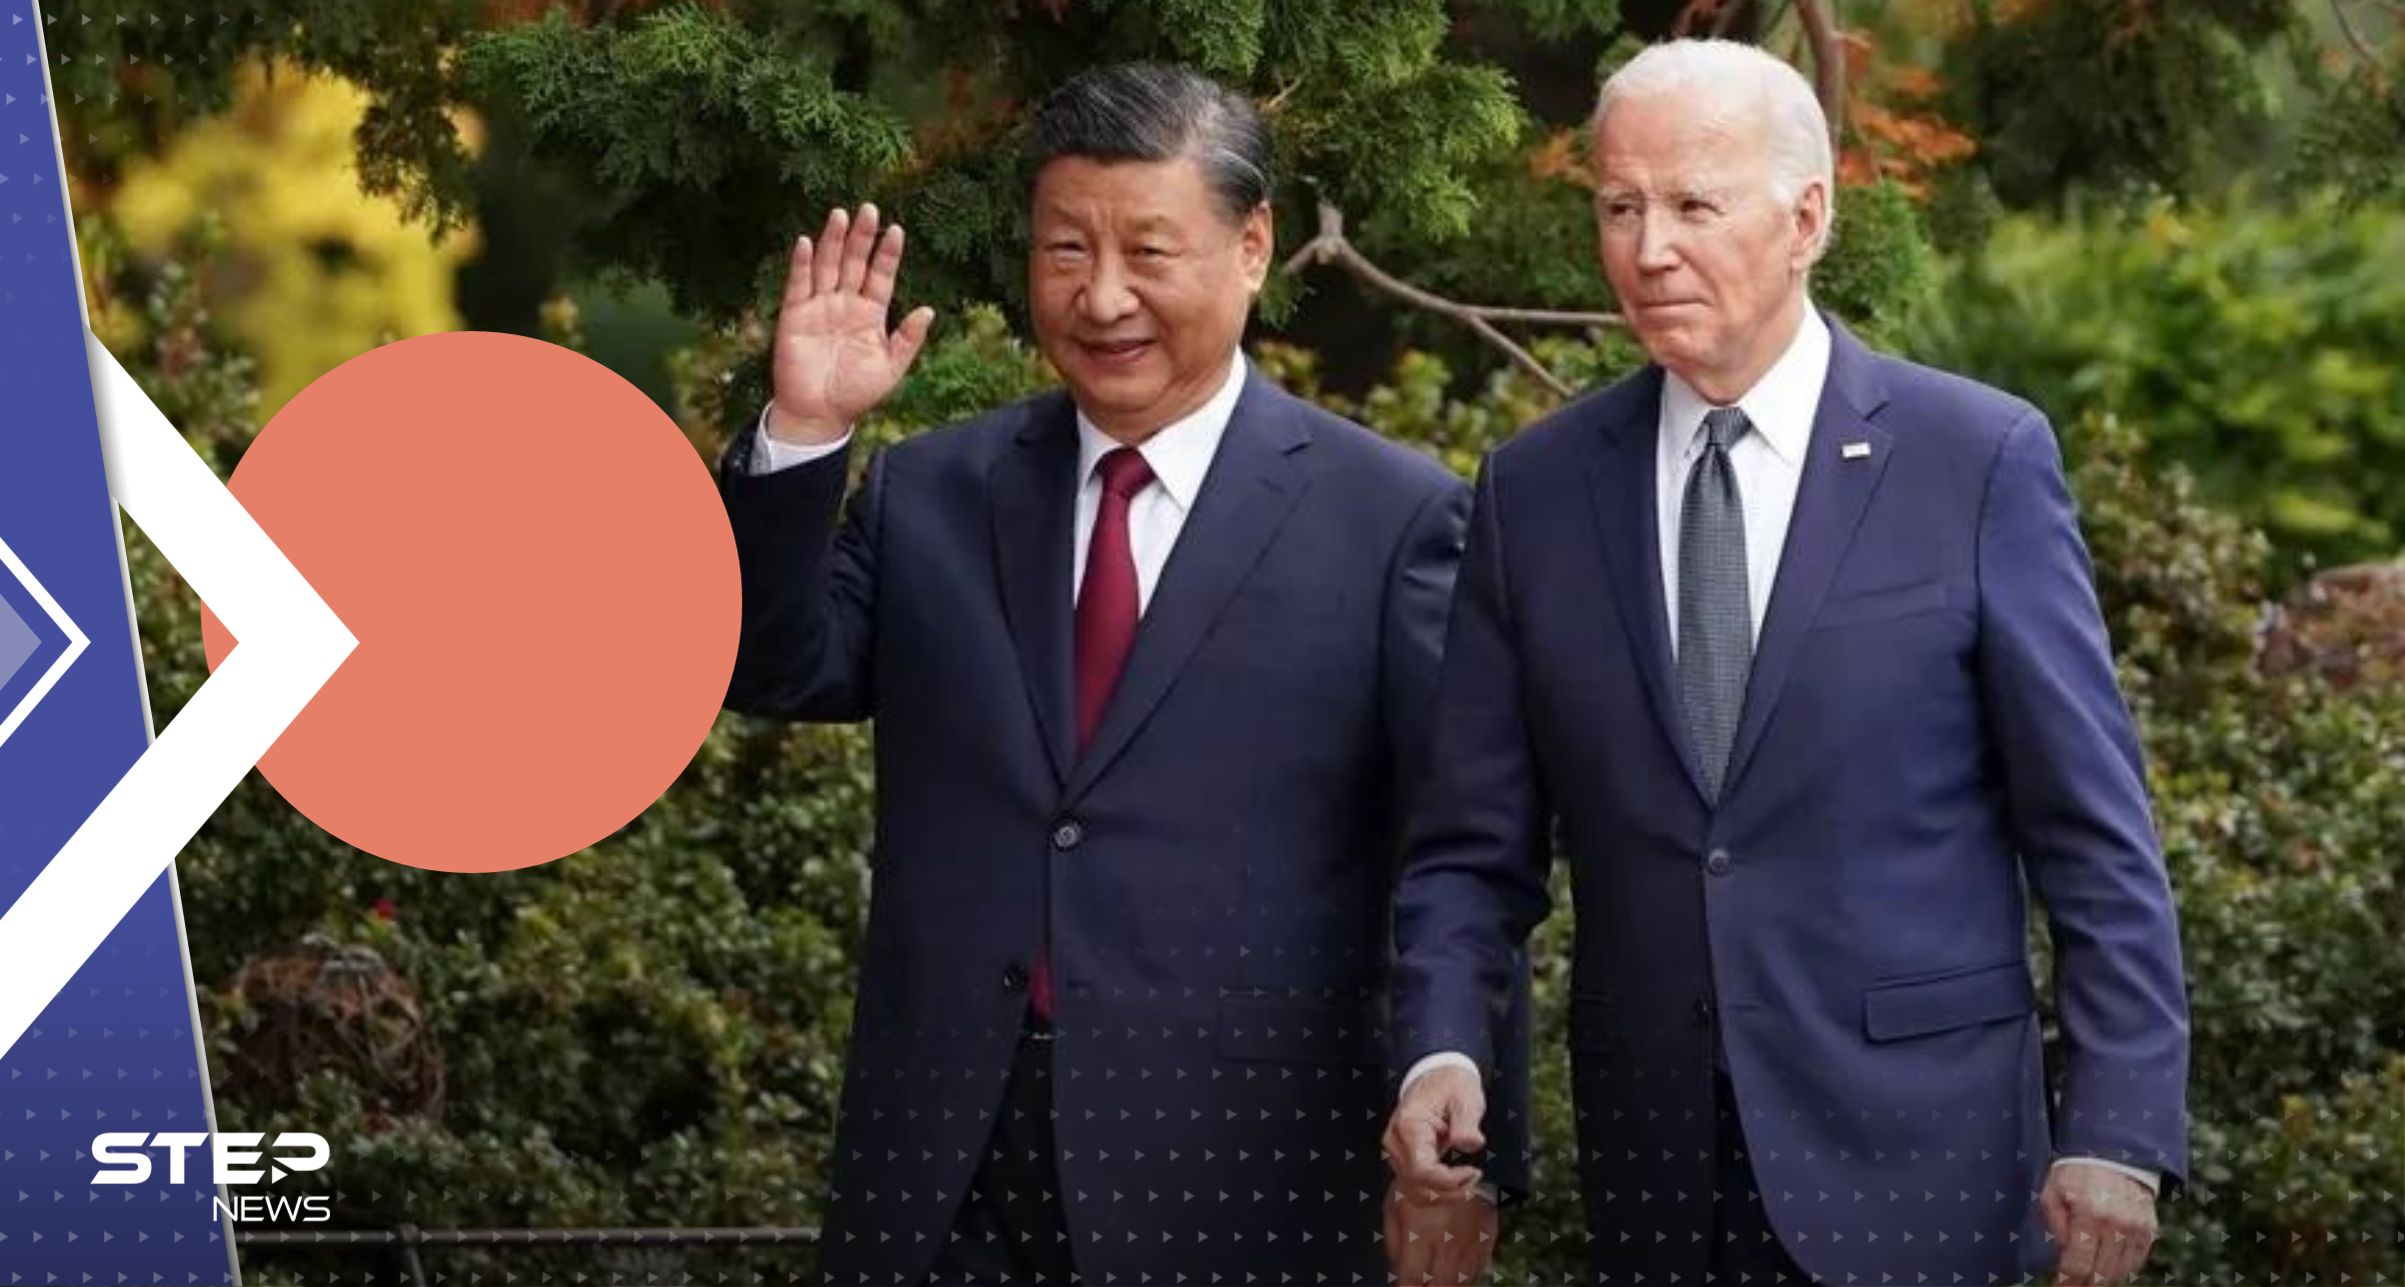 بعد لقاء طال انتظاره.. بايدن يصف الرئيس الصيني بـ الديكتاتور